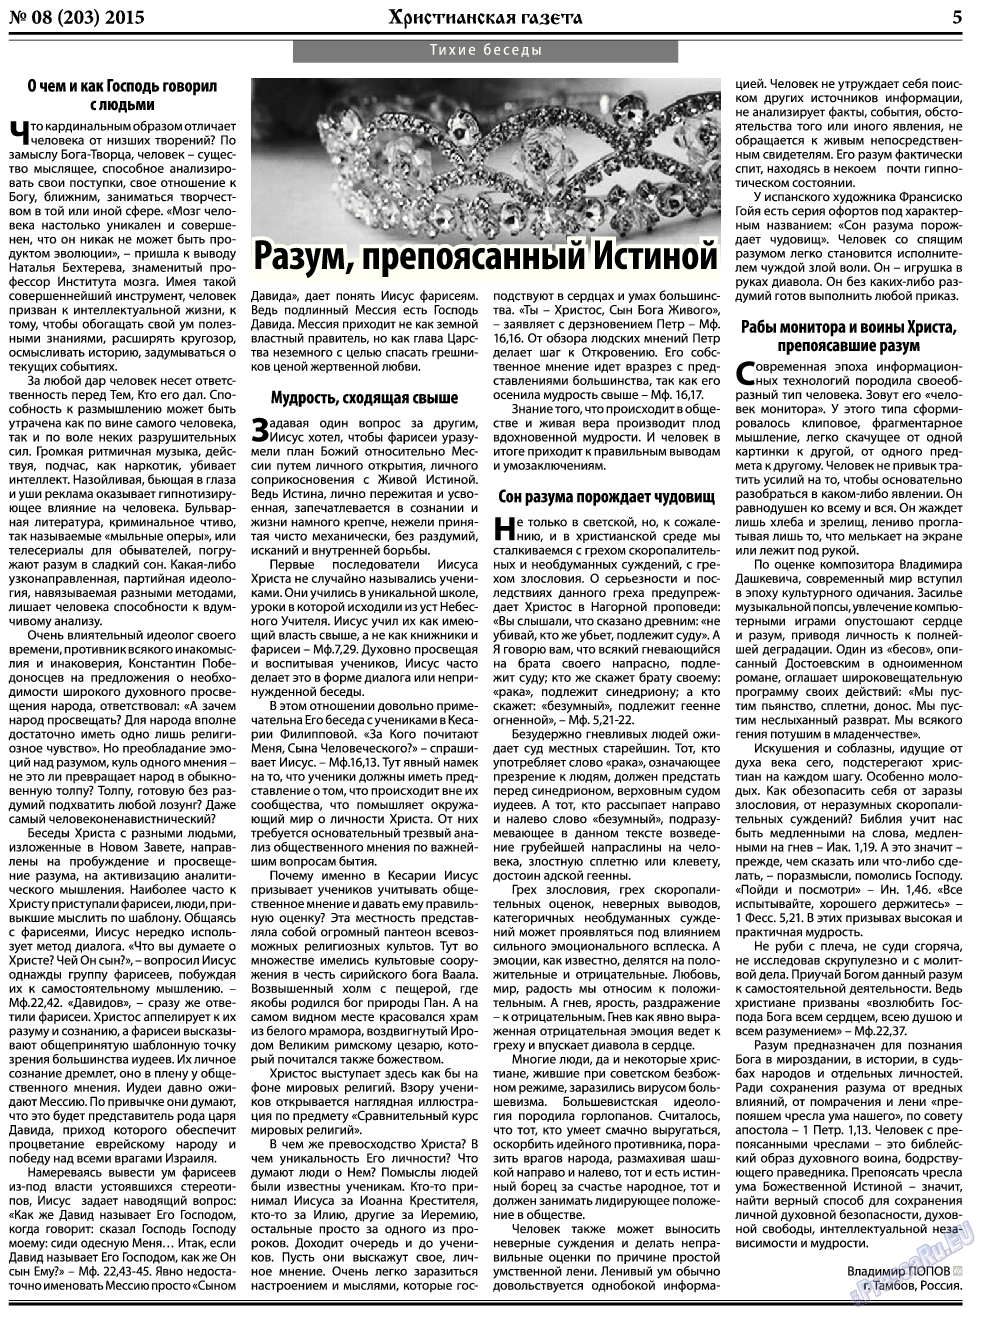 Христианская газета, газета. 2015 №8 стр.5